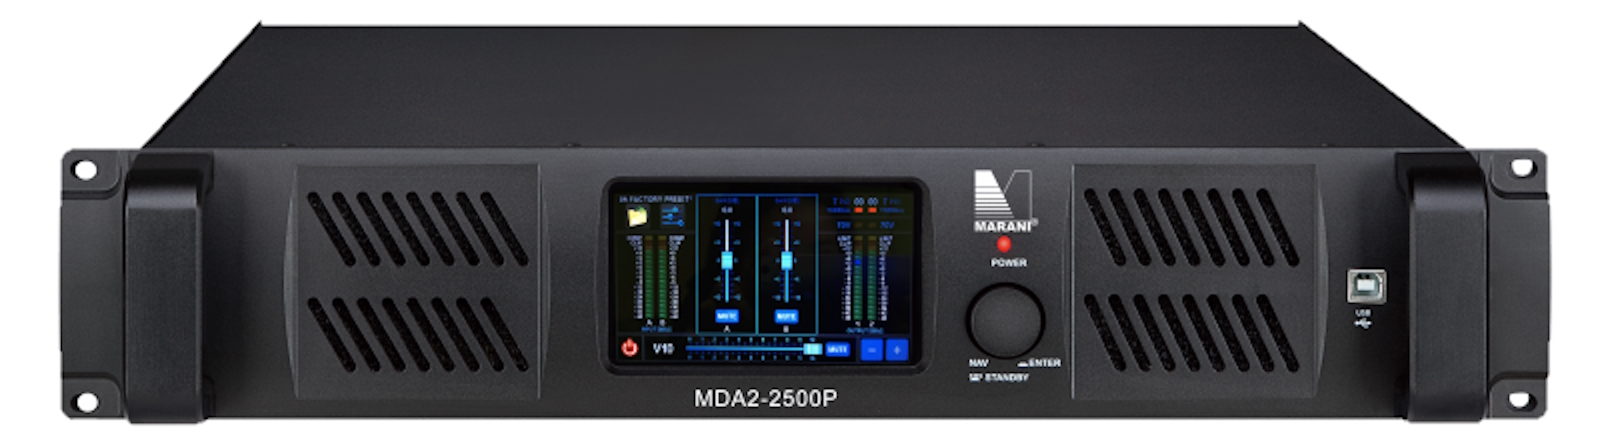 Усилители двухканальные Marani MDA2-2500P DANTE усилители двухканальные masters mda2 9000dp